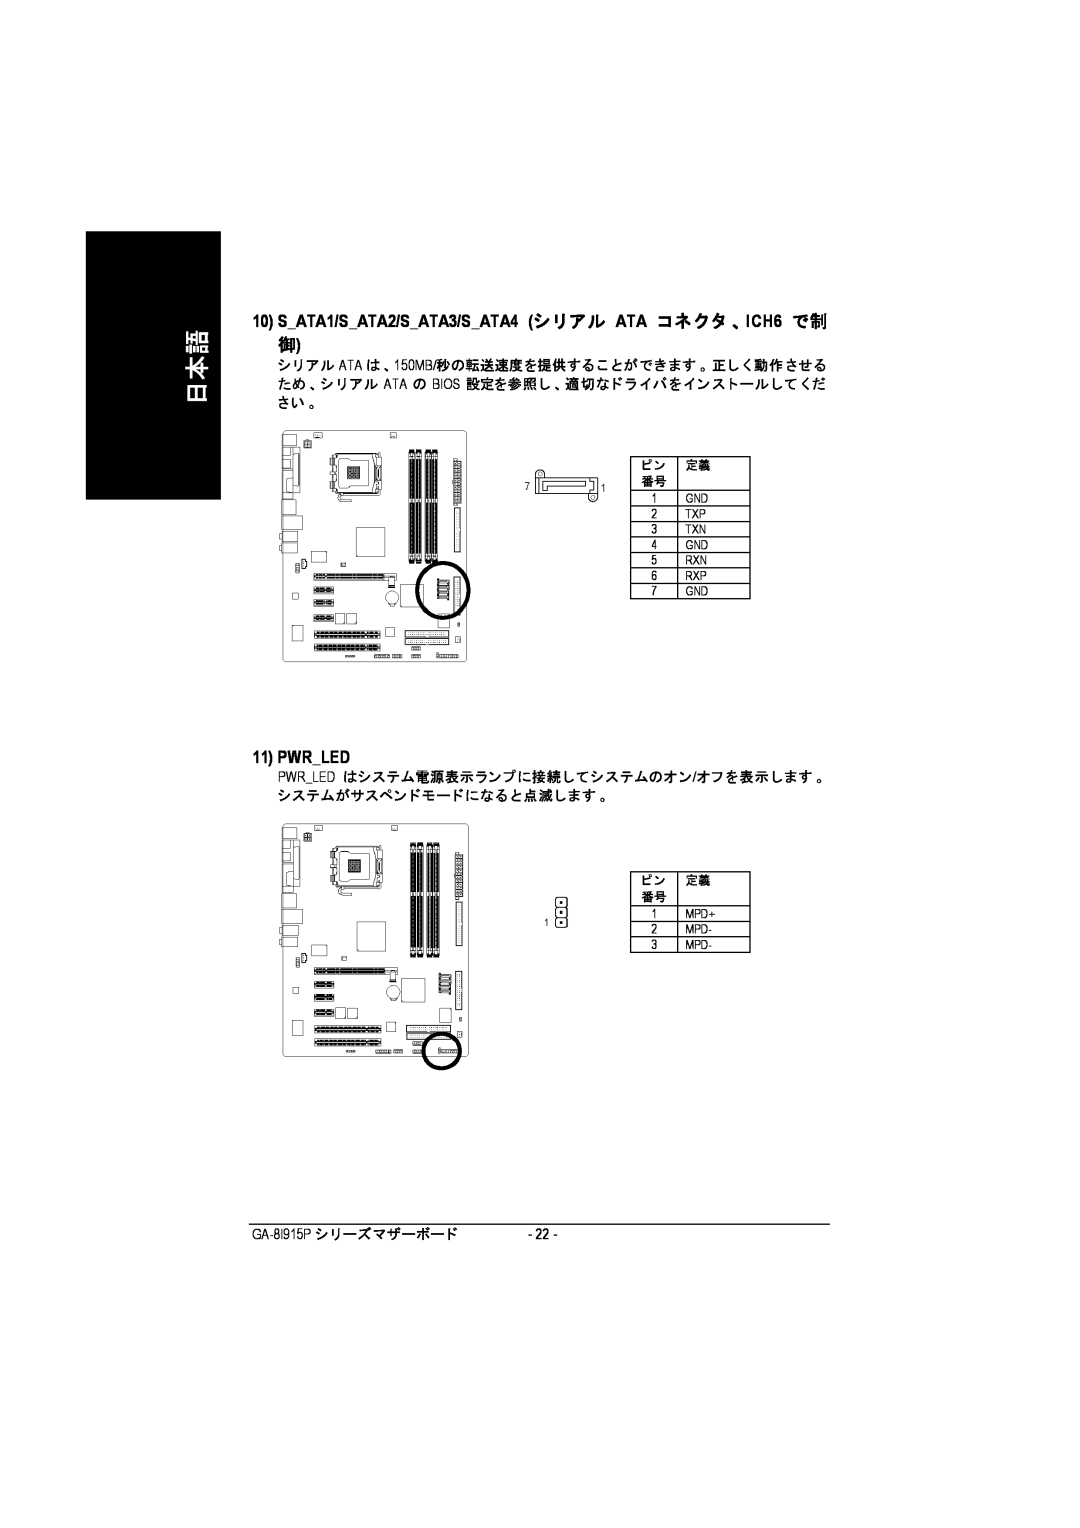 Intel GA-8I915P manual SATA1/SATA2/SATA3/SATA4 シリアル ATA コネクタ 、ICH6 で制 御, Pwrled 